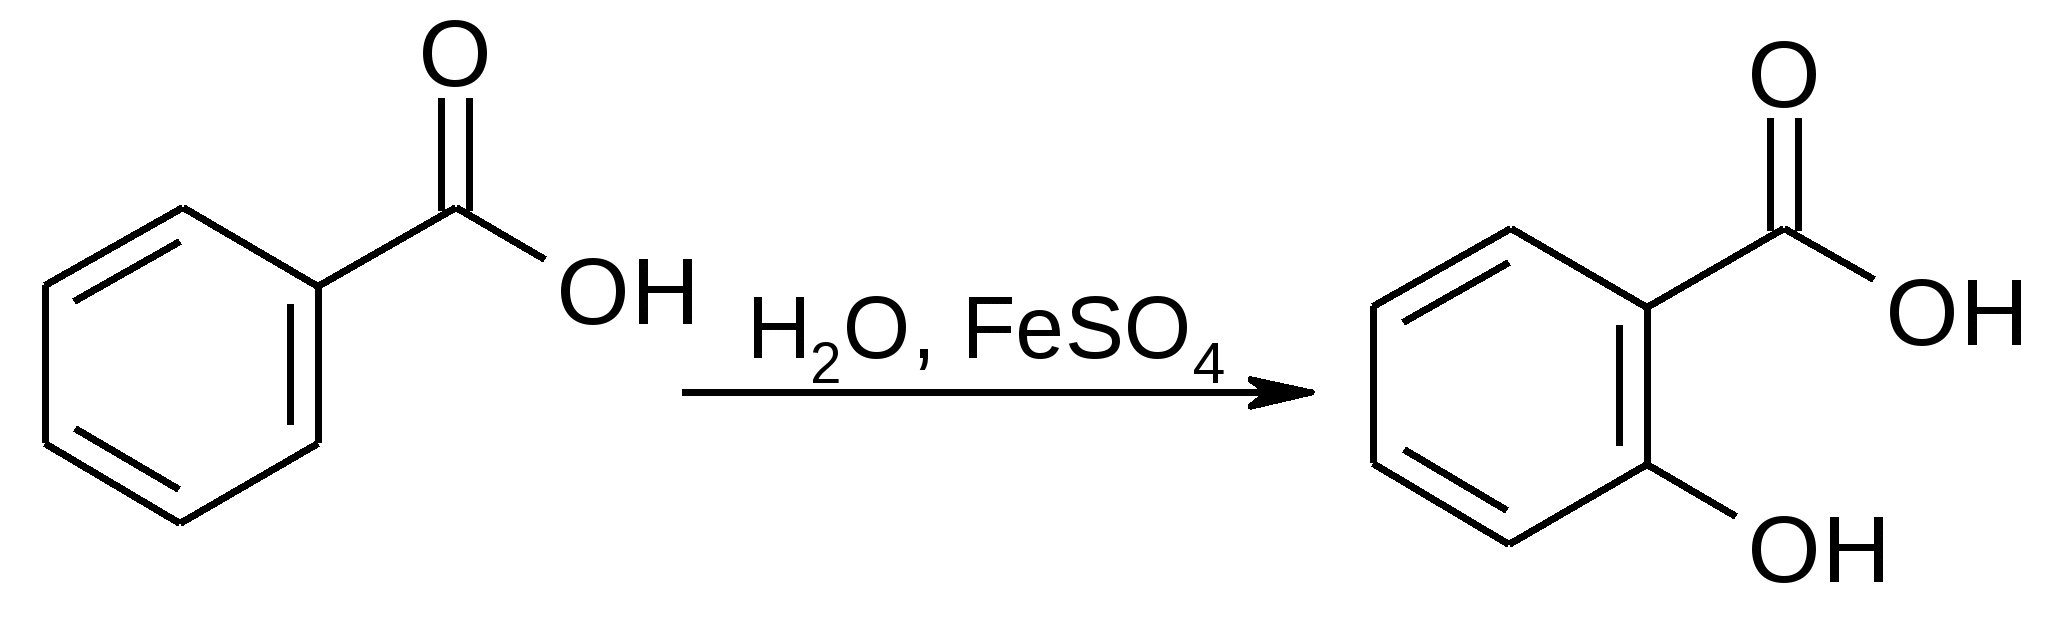 Реакции с хлоридом железа 3. Ацетилсалициловая кислота и хлорид железа 3. Бензоилхлорид в бензальдегид. Ацетилсалициловая кислота и хлорид железа 3 реакция. Бензоилхлорид + KCN.